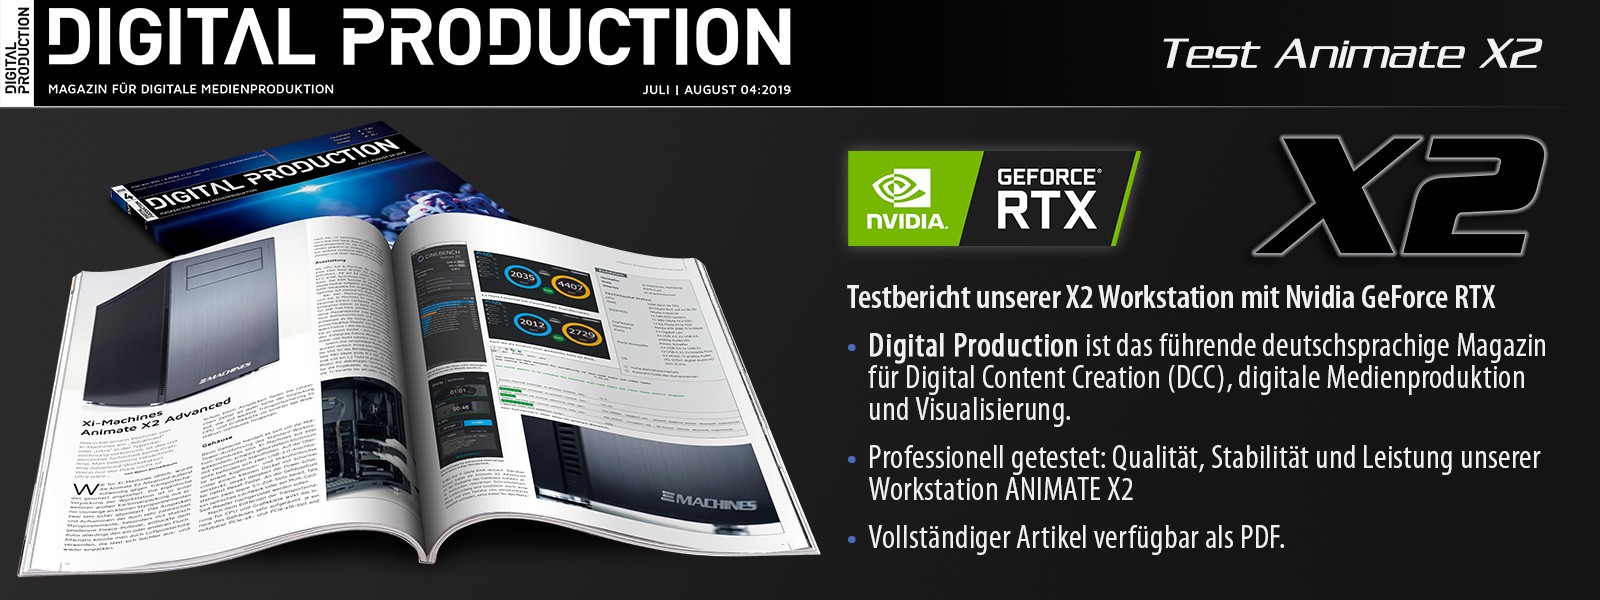 X2 - jetzt mit NVIDIA GeForce RTX